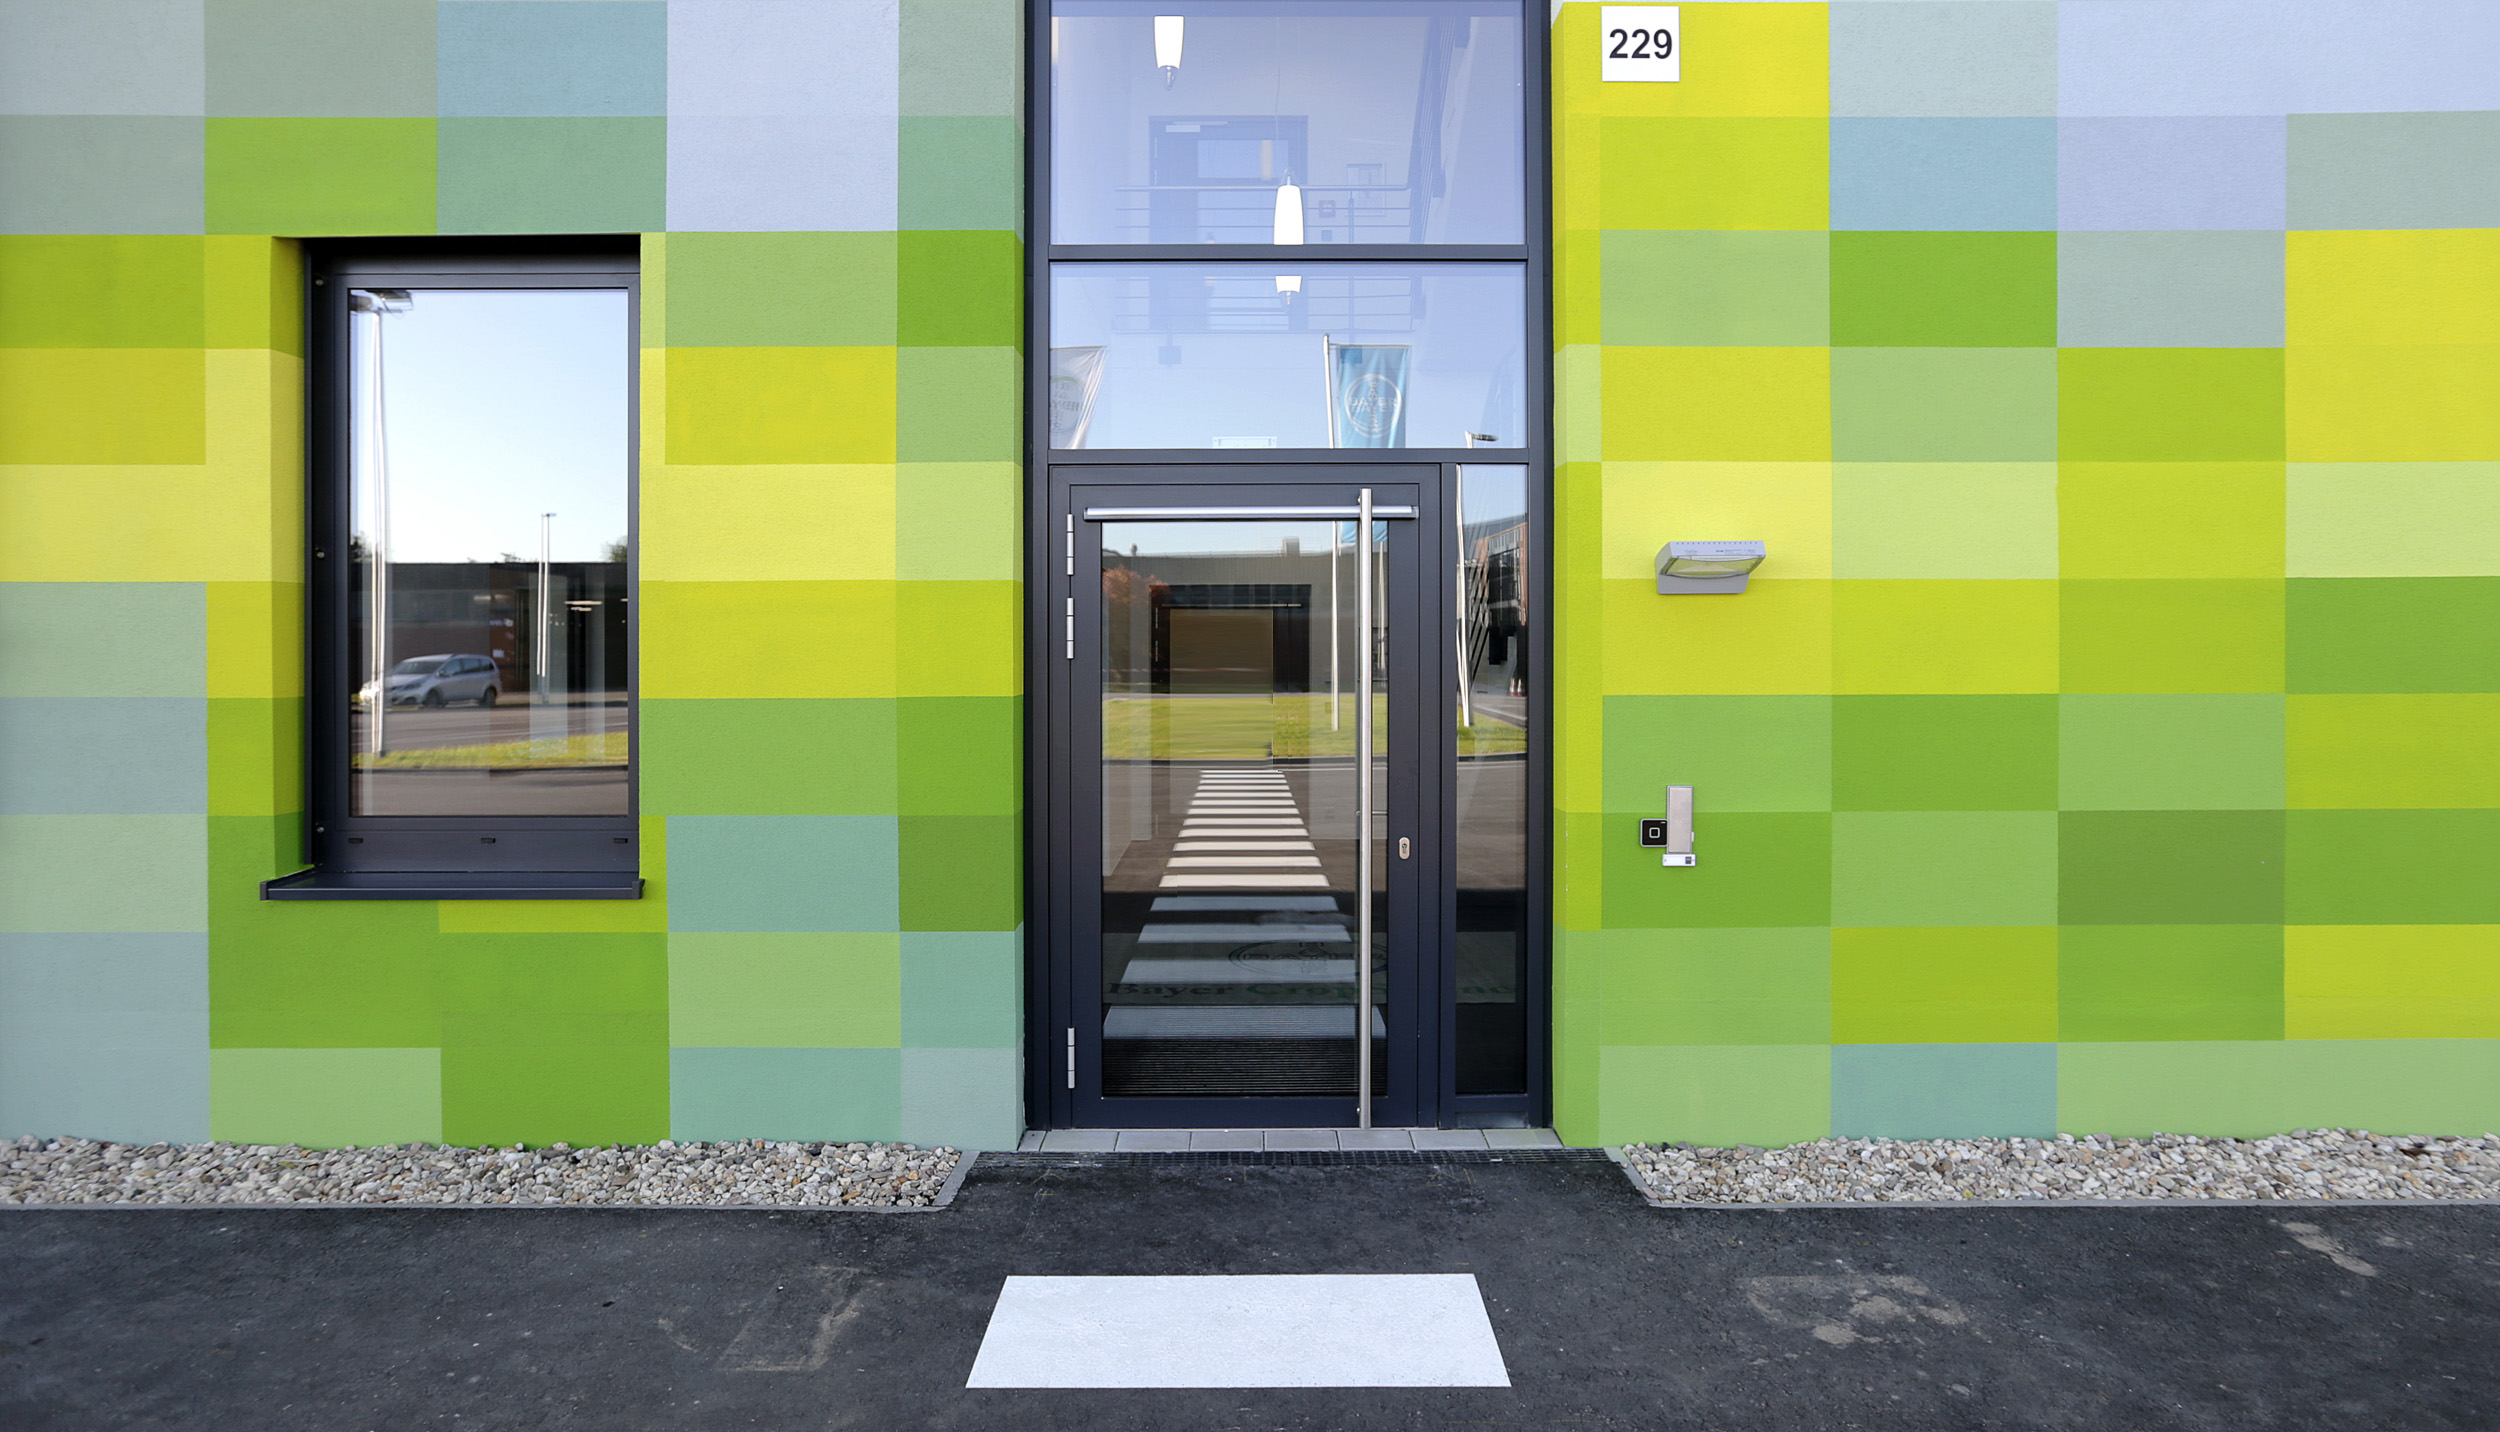 Fassadengestaltung-auf-Putz-eingang-industriegebaude-halle-bayer-monheim-farbe.jpg